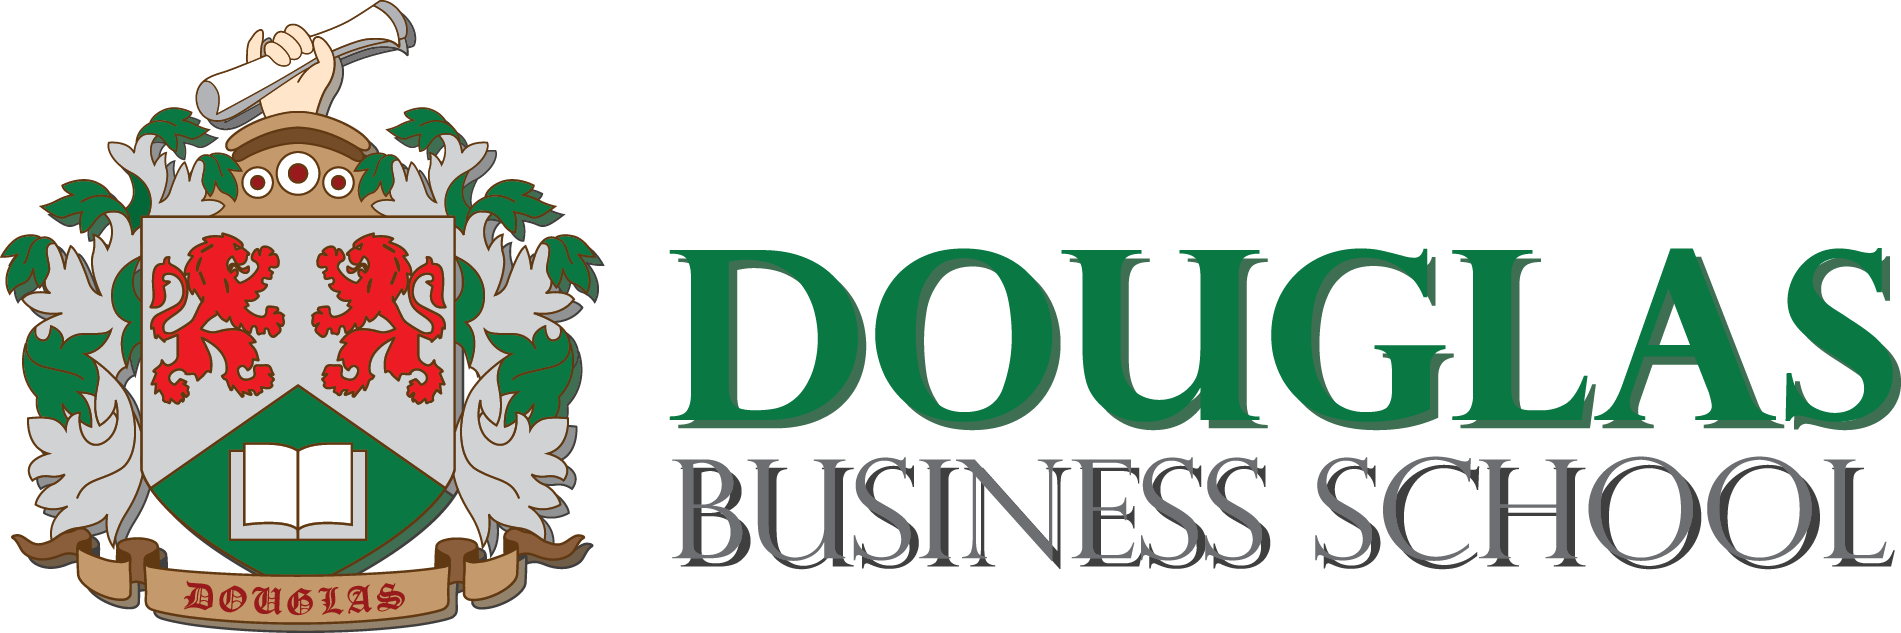 Douglas Business School – Douglas Business School site